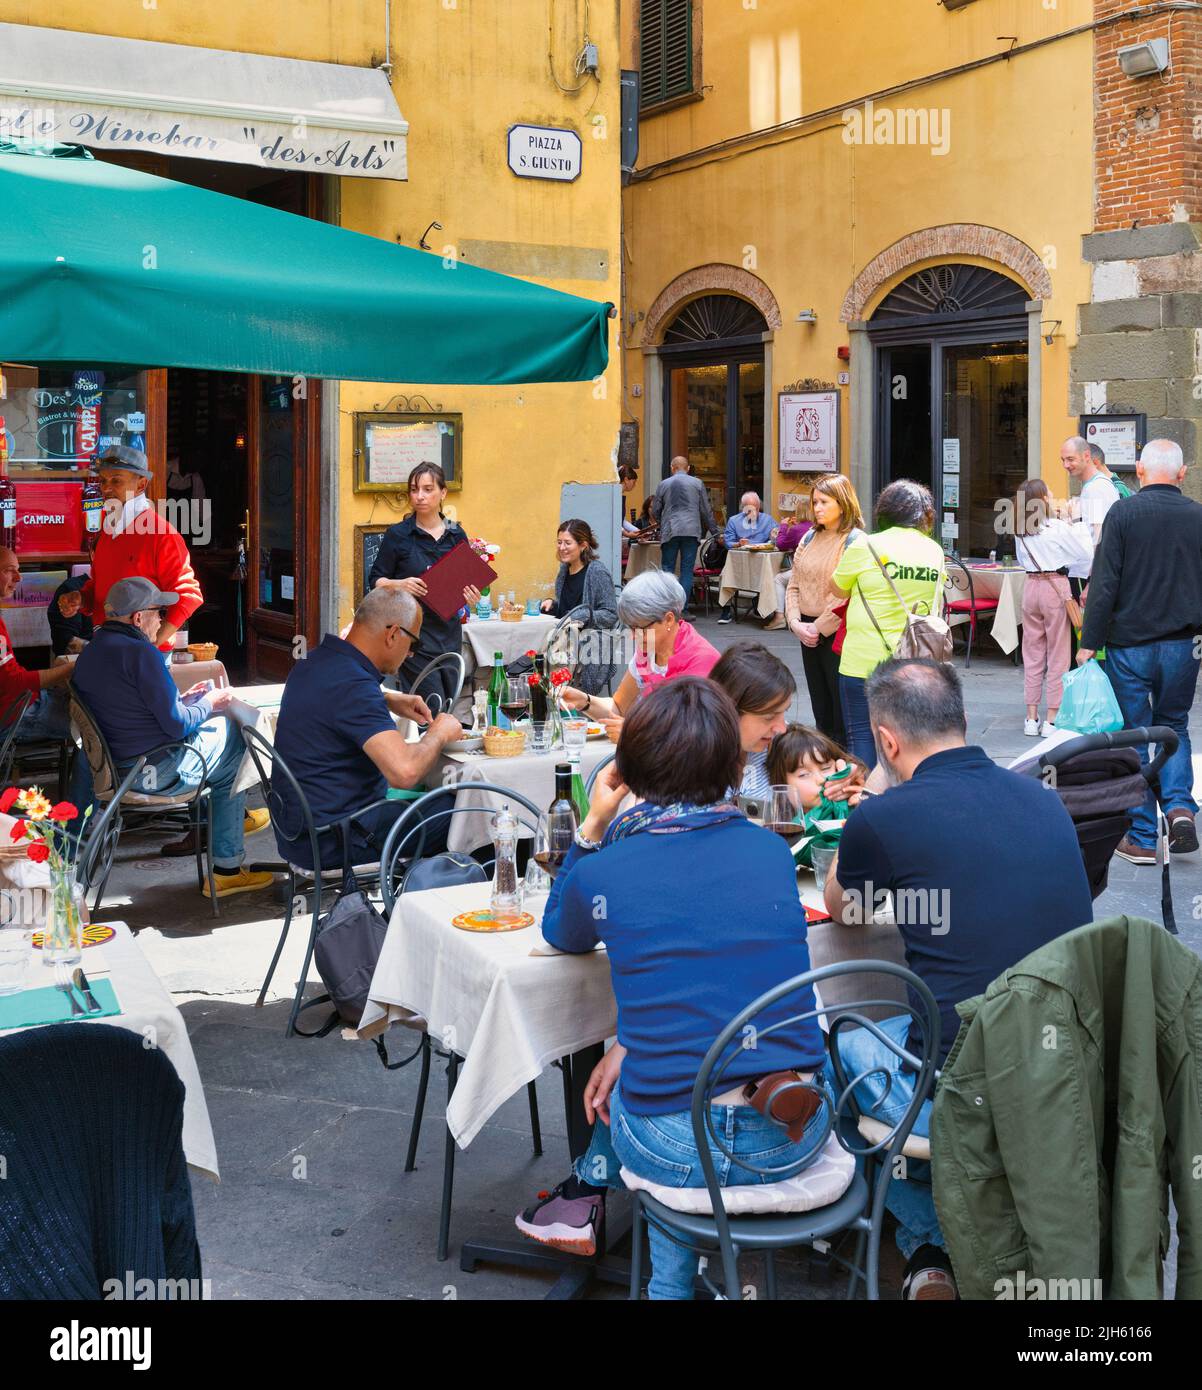 Los comensales disfrutan de la comida en la terraza de un restaurante en Piazza San Giusto. Lucca, provincia de Lucca, Toscana, Italia. Foto de stock